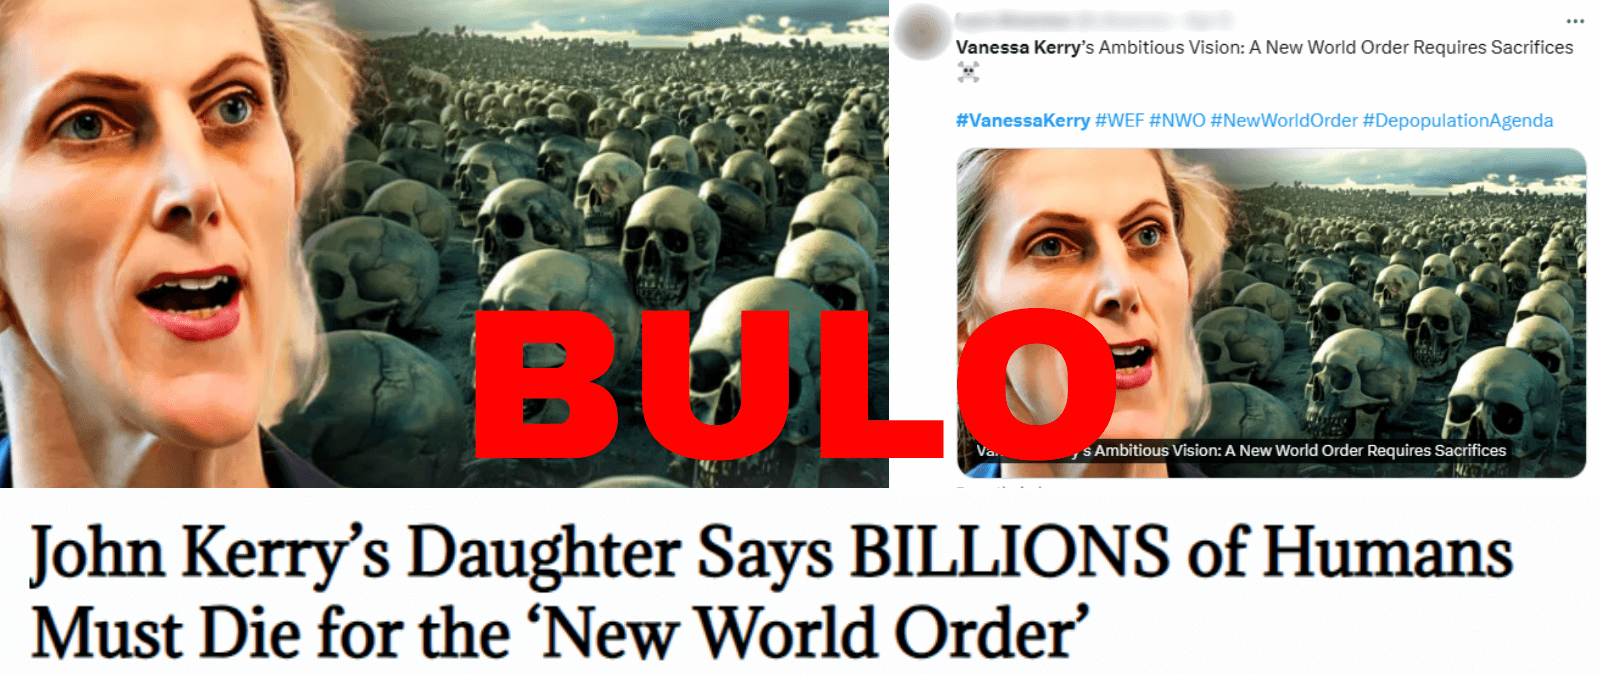 No, la hija de John Kerry, Vanessa Kerry, no ha dicho que billones de humanos deben morir para un “nuevo orden mundial”